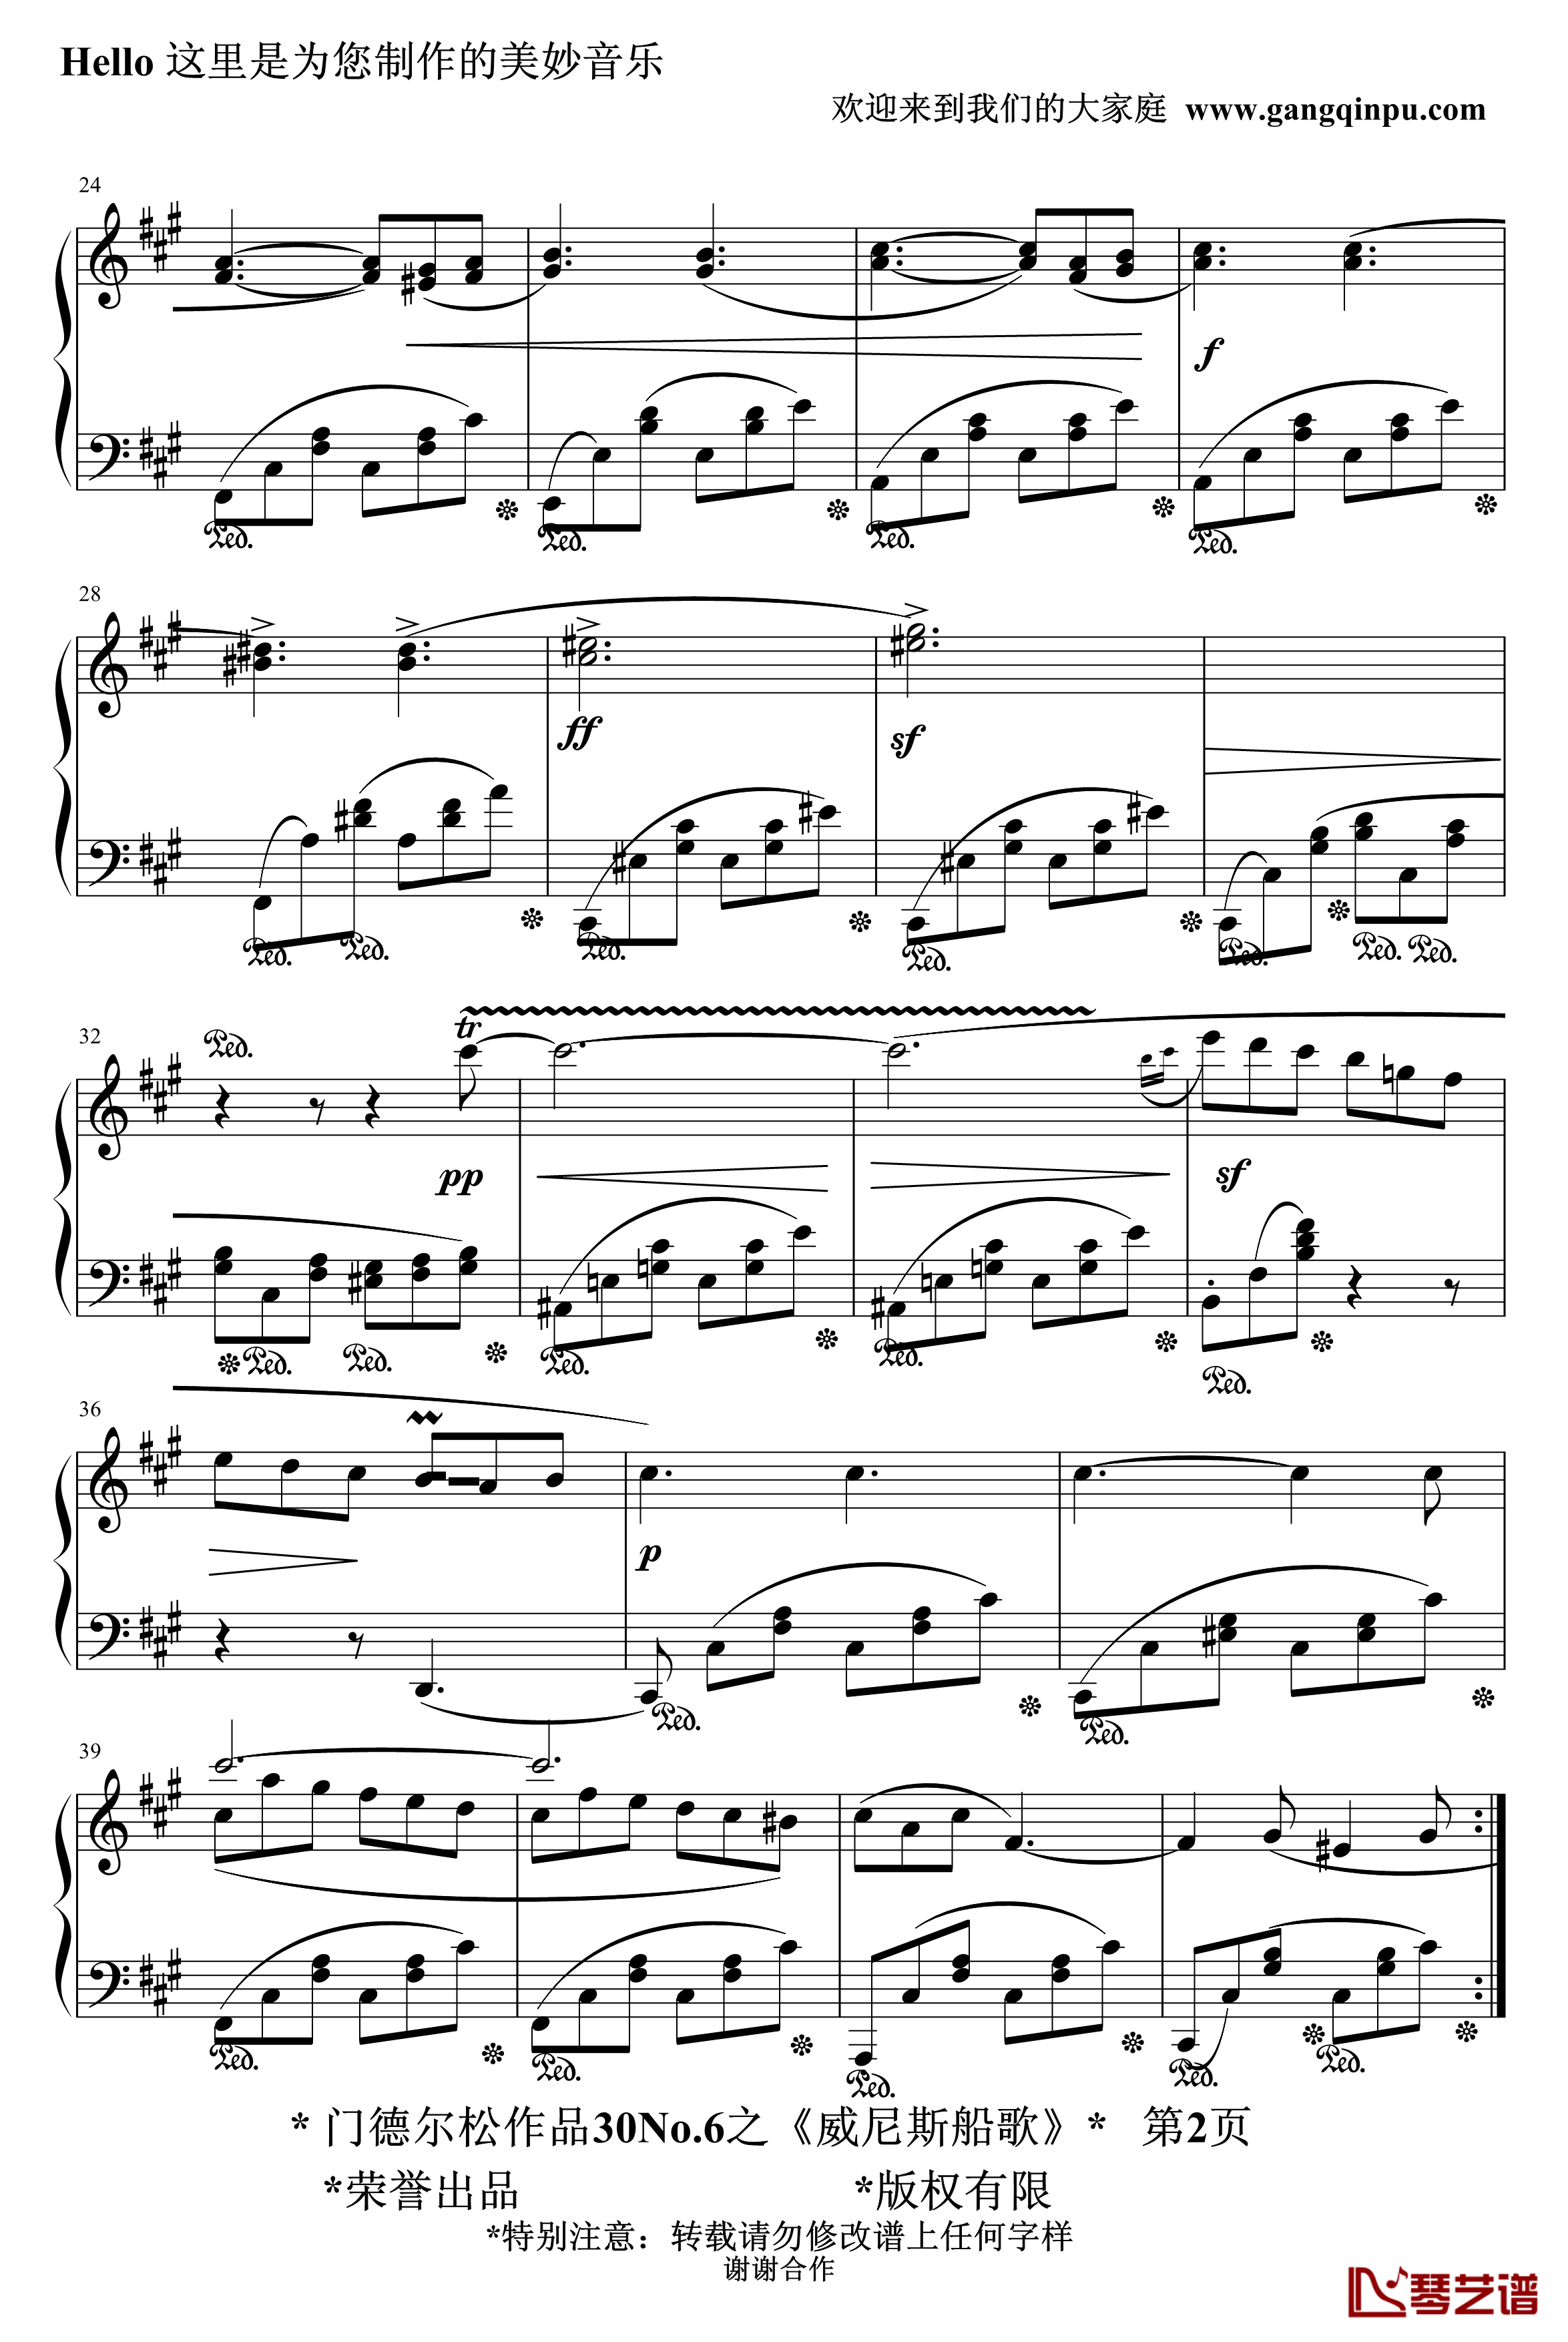 威尼斯船歌钢琴谱-精制-门德尔松2